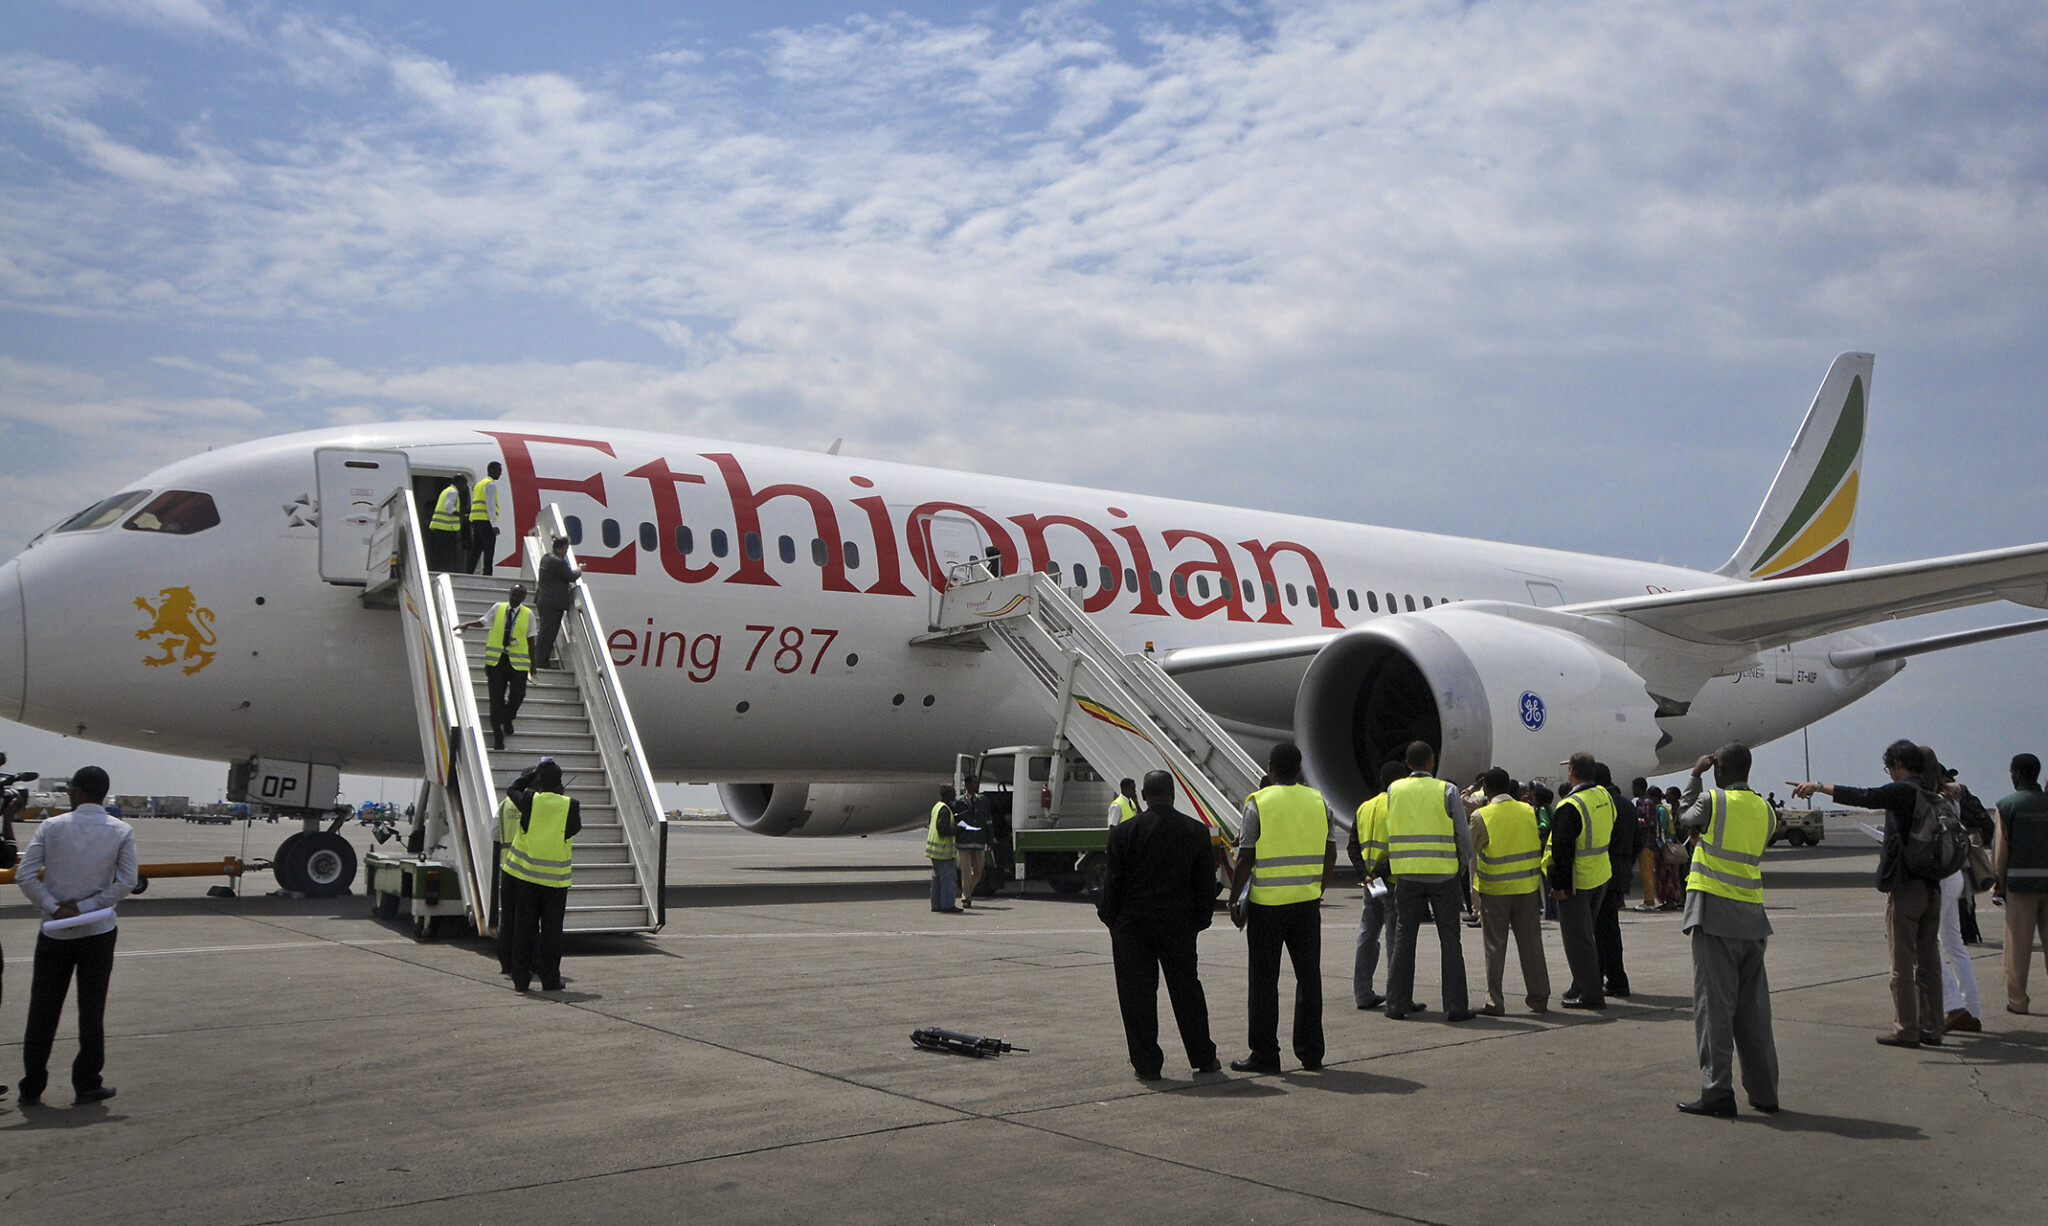 Ethiopian Airlines names new Dreamliner plane 'Tel Aviv' The Times of